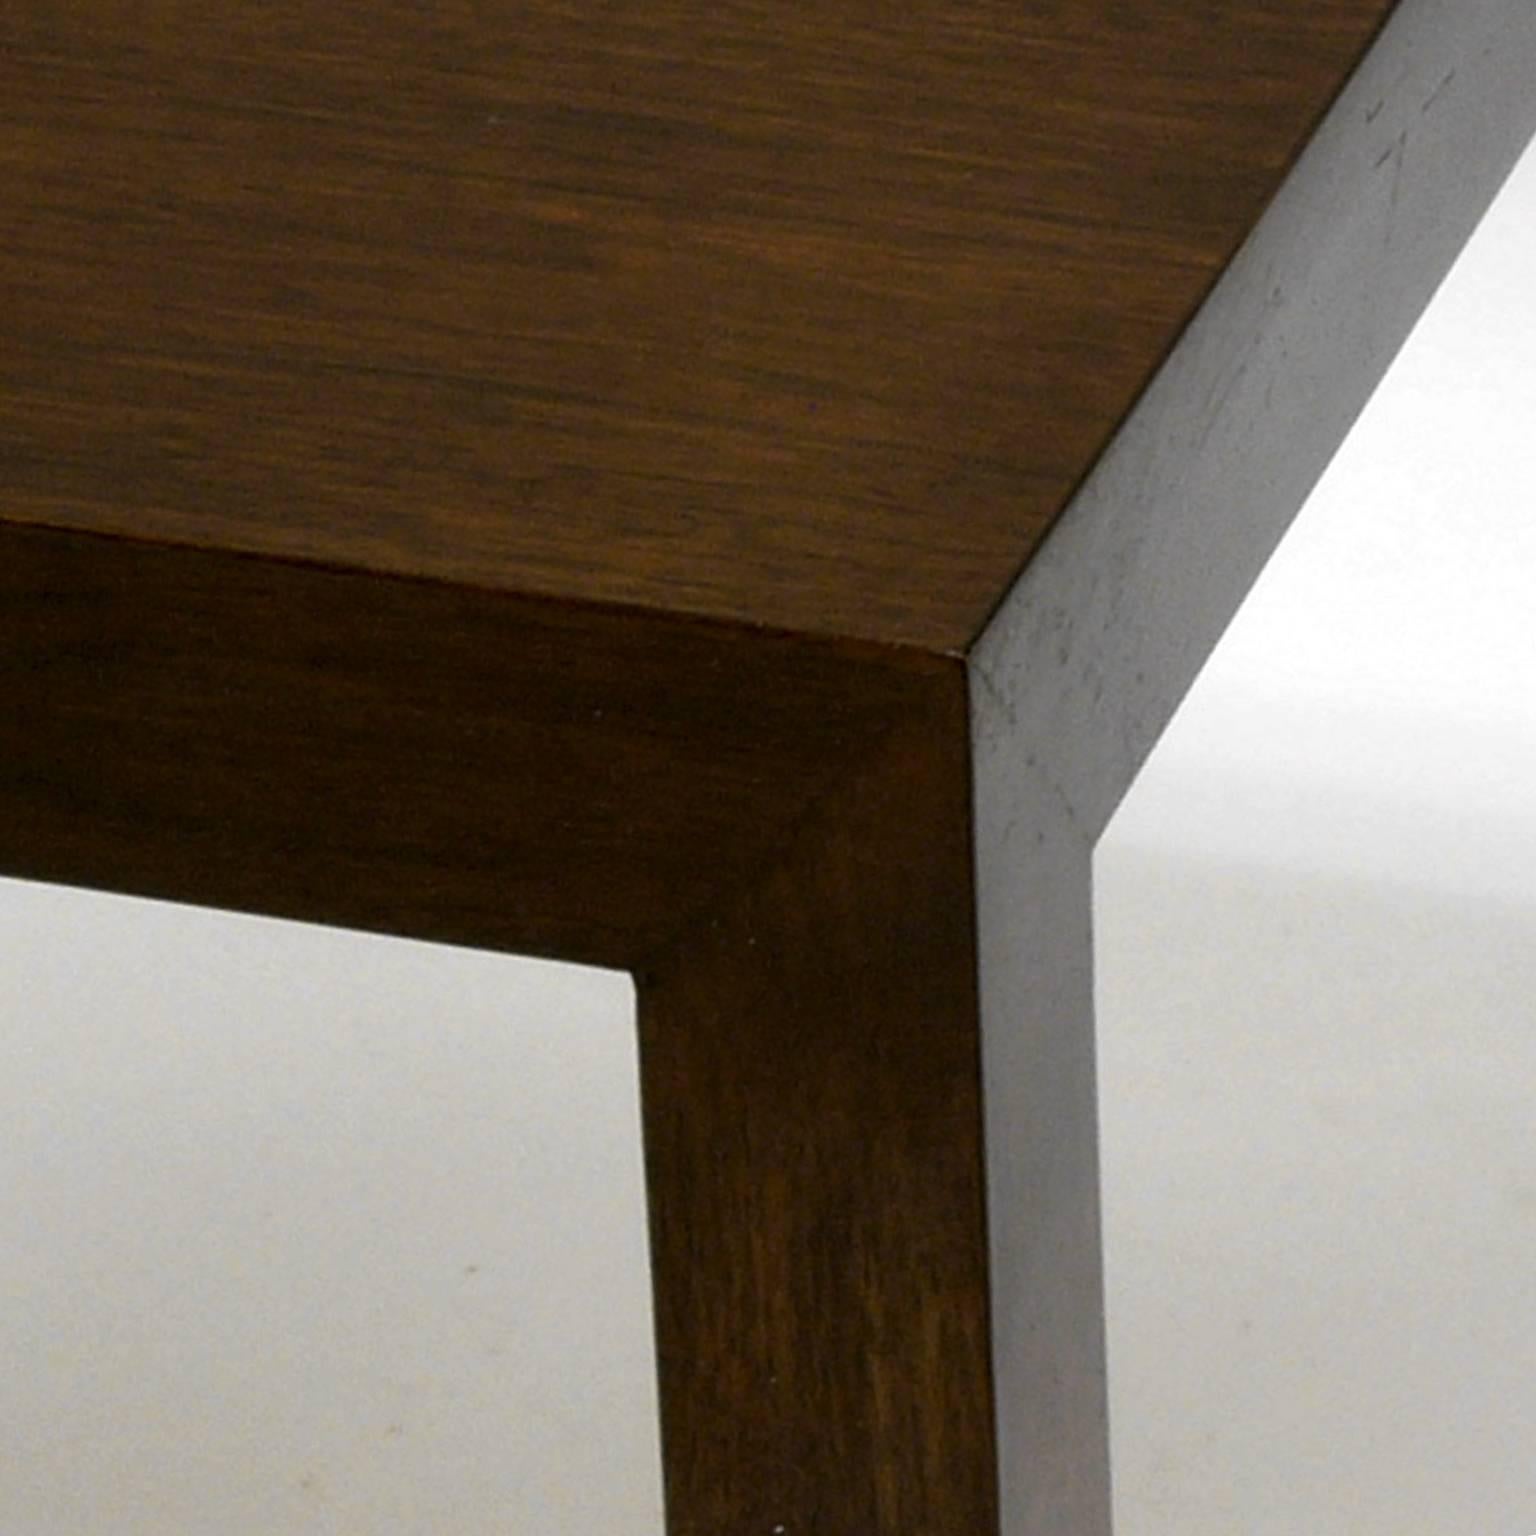 Schönes Paar Dunbar Parsons-Tische, entworfen von Ed Wormley. Beide Tische tragen noch das originale Dunbar-Abzeichen auf der Unterseite.